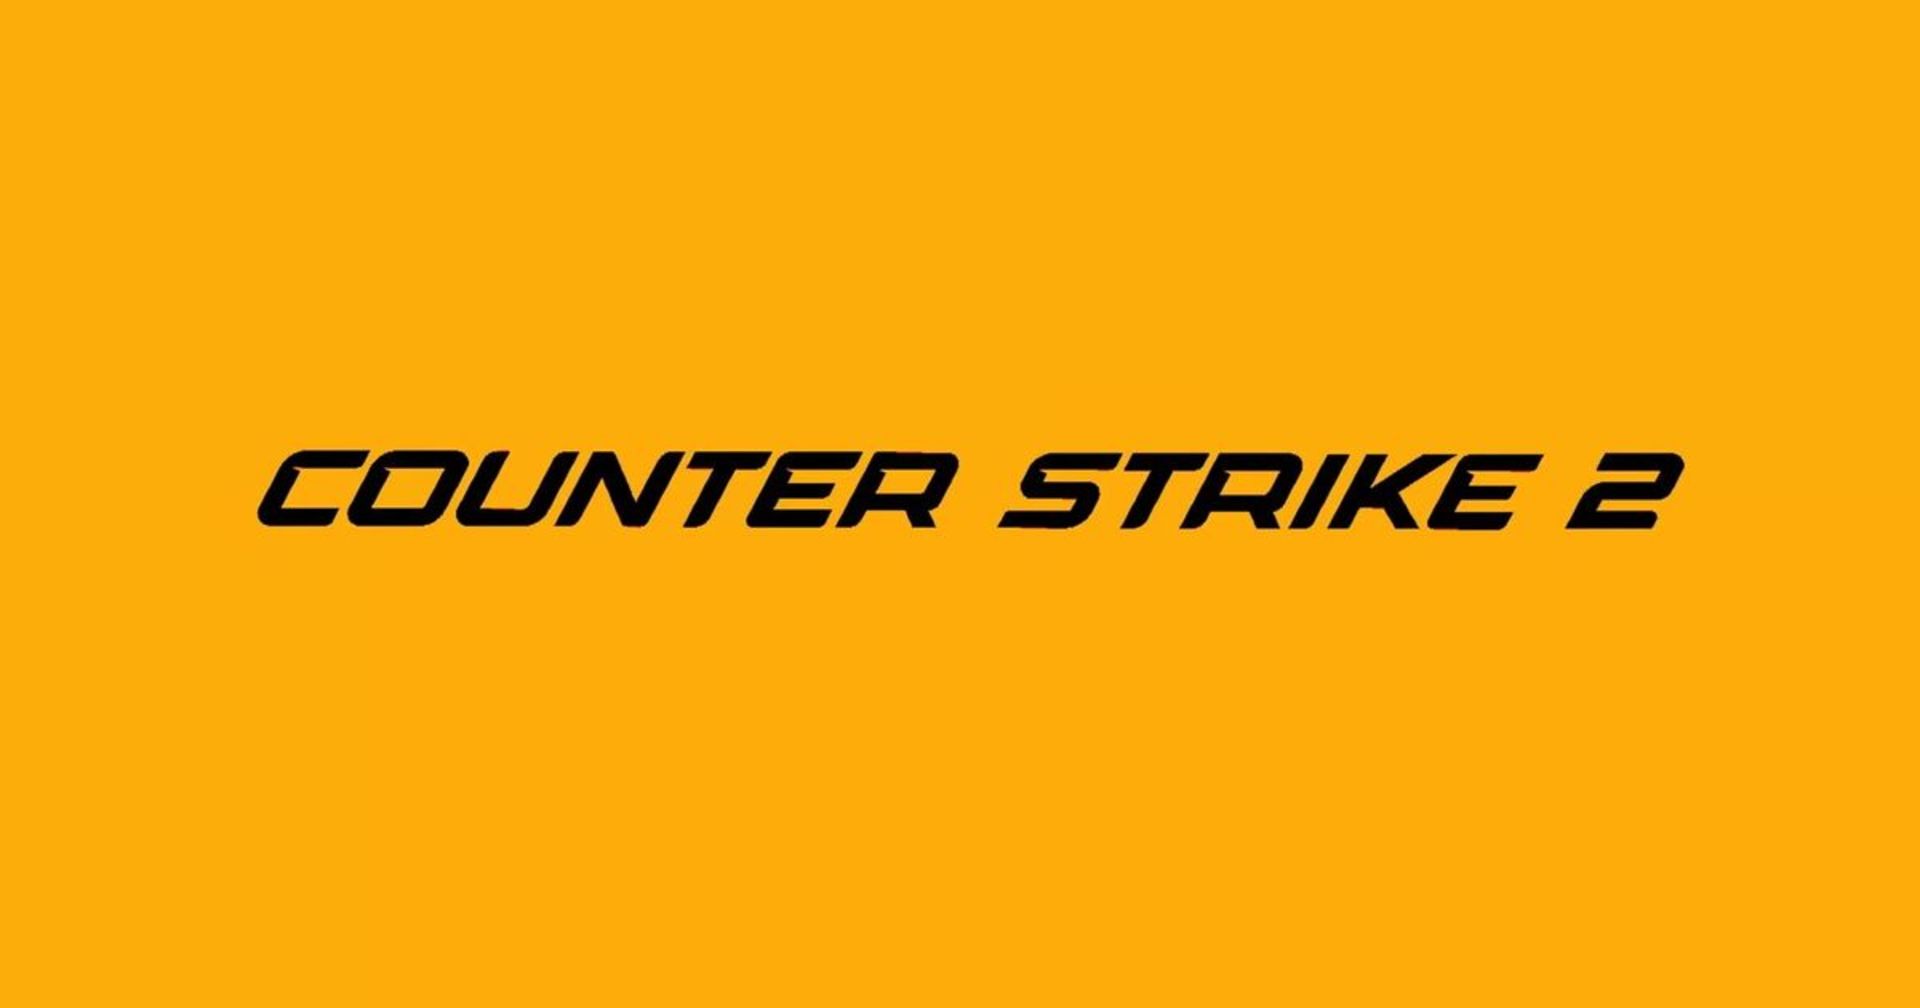 Պաշտոնապես ներկայացվել է Counter-Strike 2-ը